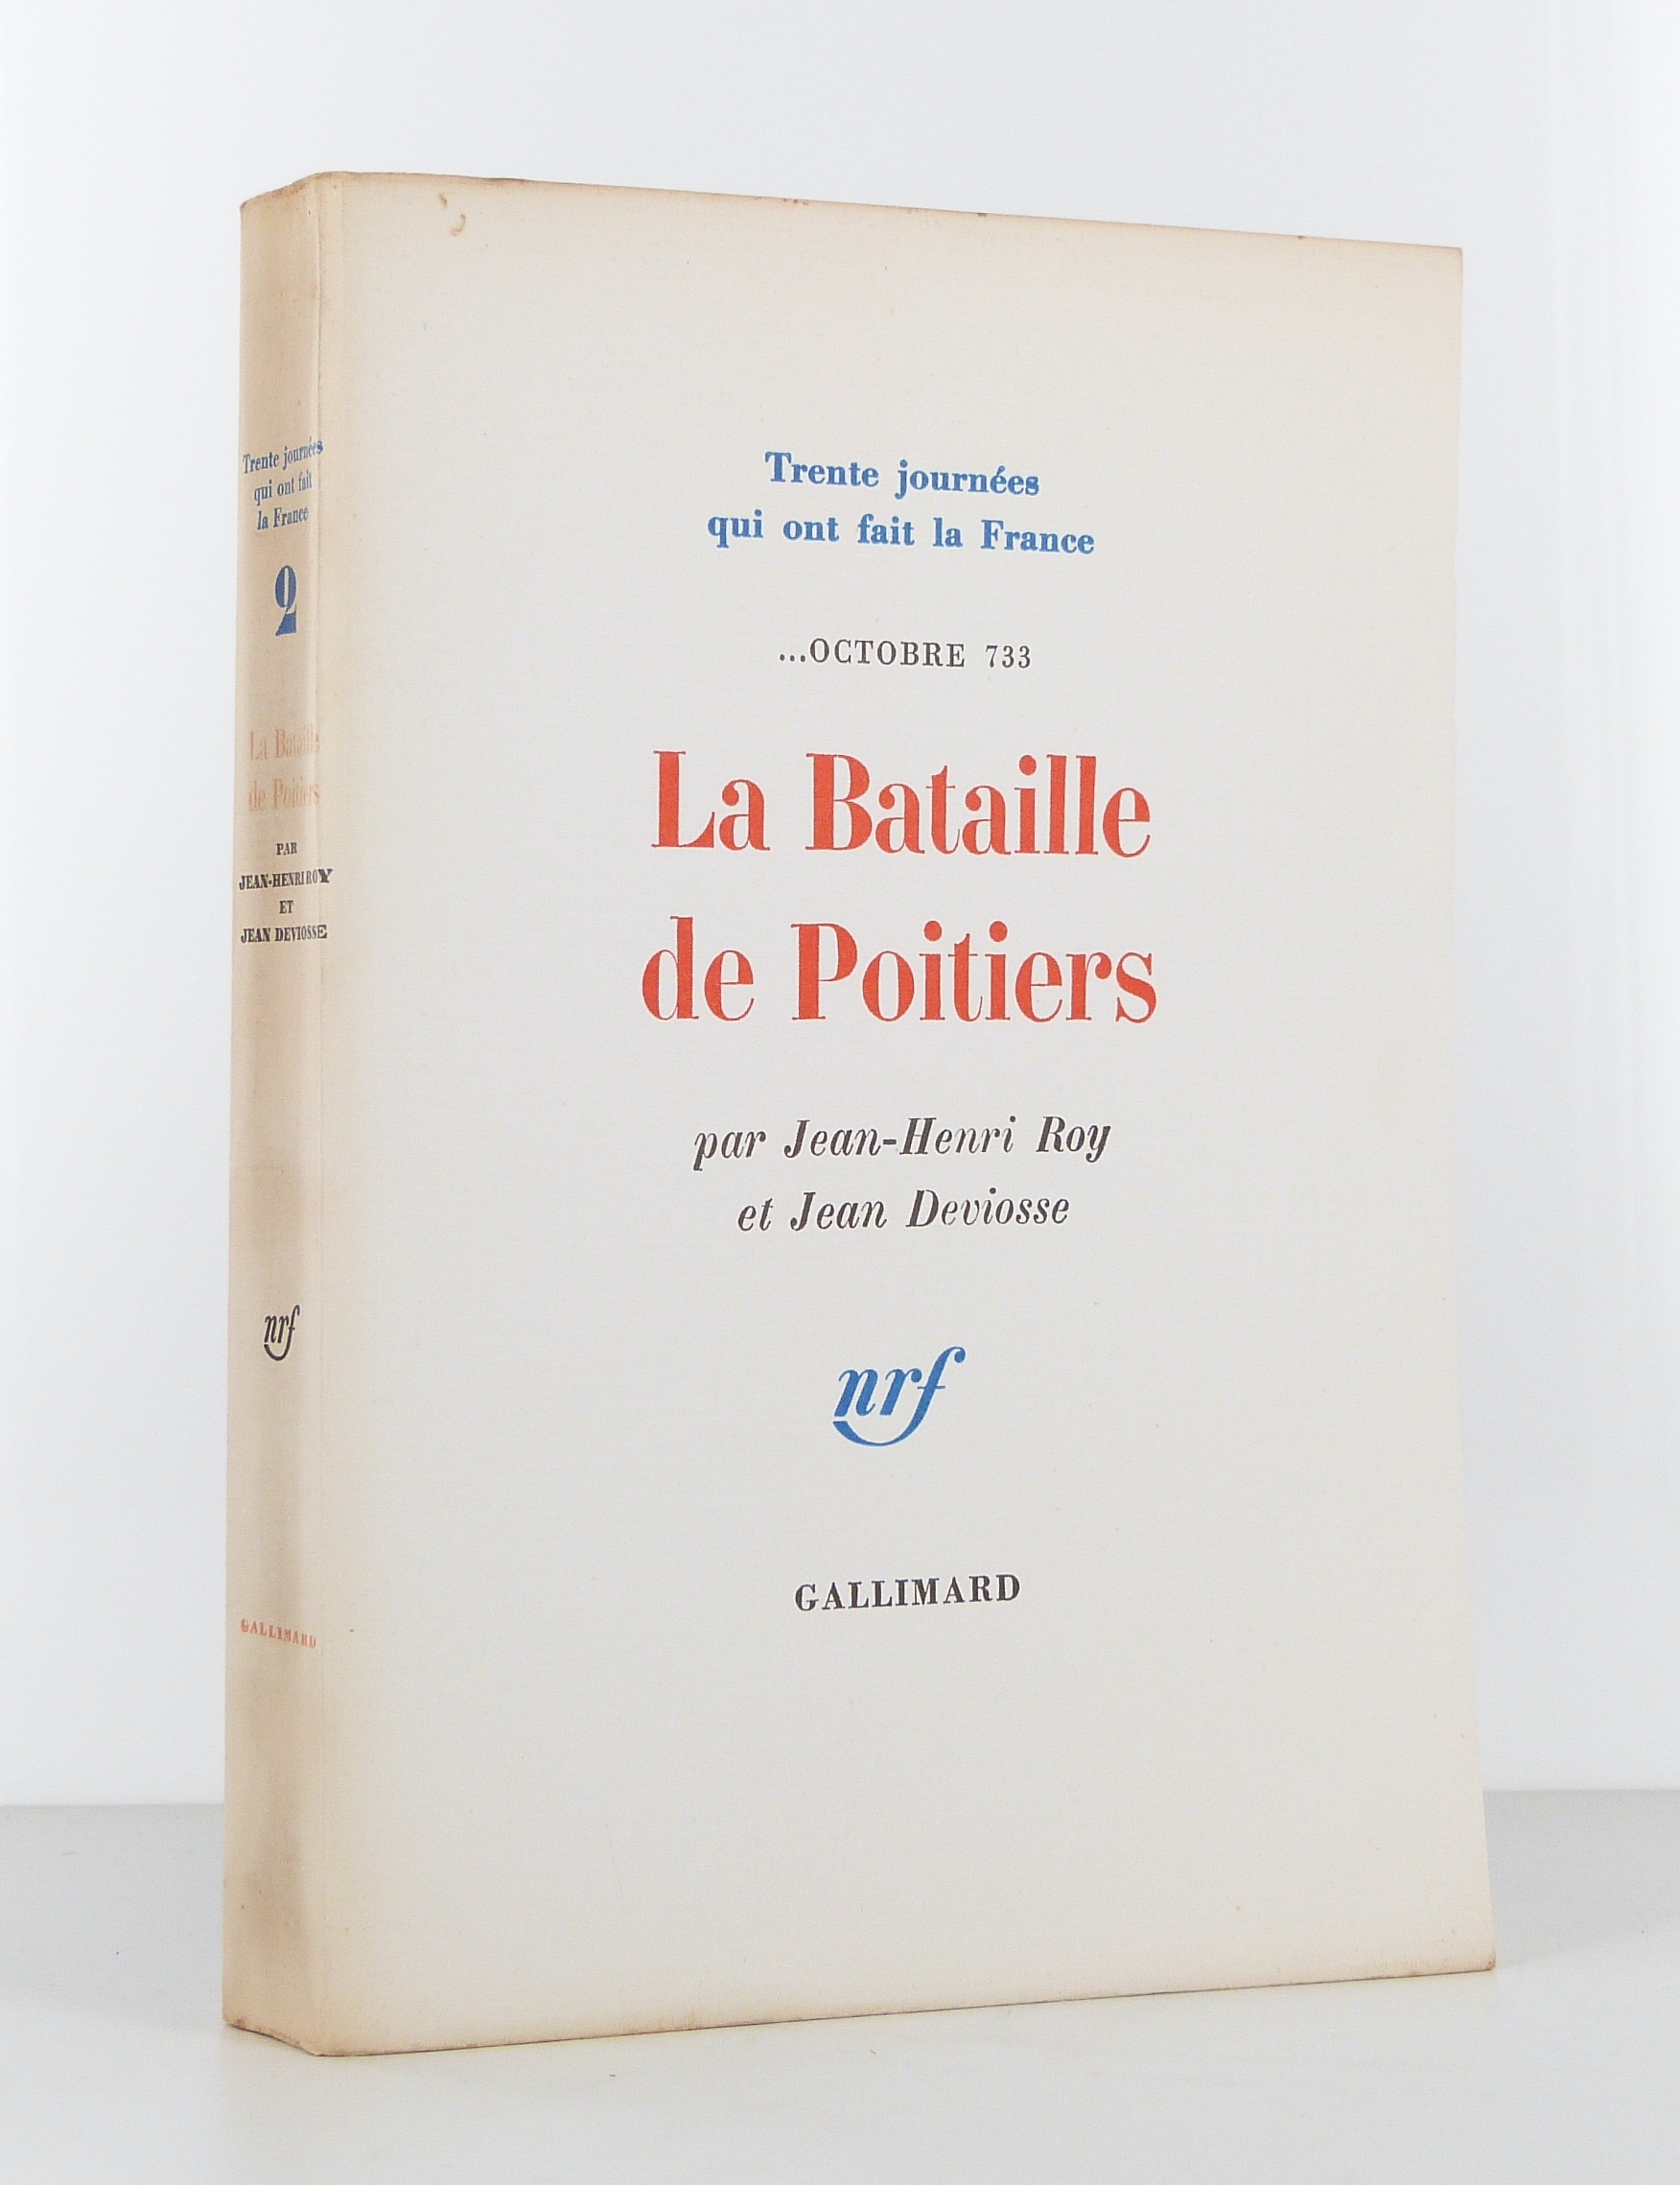 ... Octobre 733 : La Bataille de Poitiers